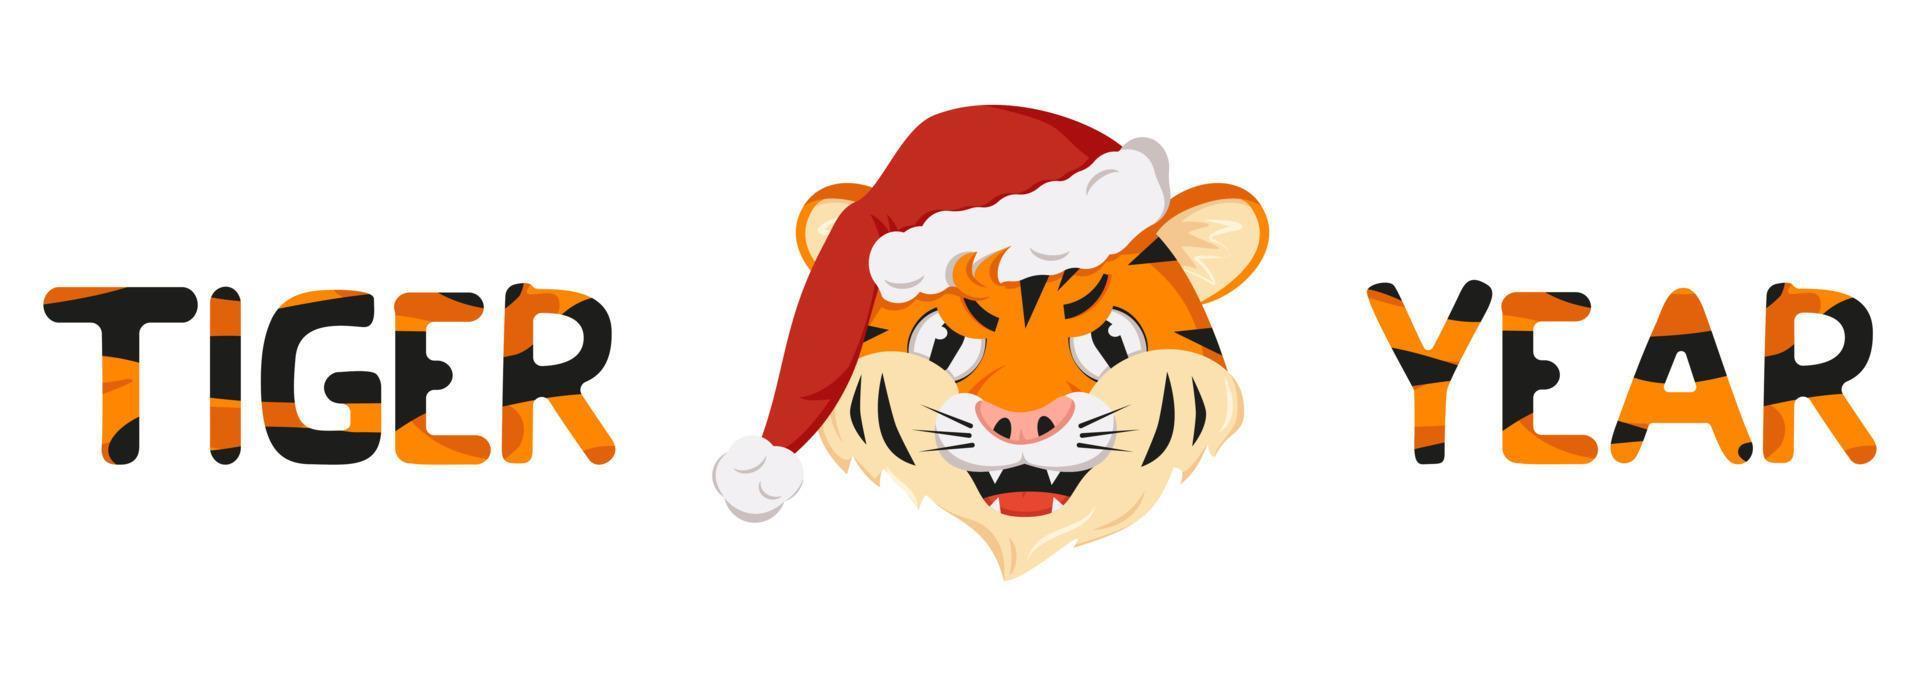 tigre arrabbiata, simbolo del nuovo anno in cappello di Babbo Natale rosso. animali selvatici dell'africa, faccia con emozione furiosa, decorazione natalizia con scritte a strisce arancioni vettore